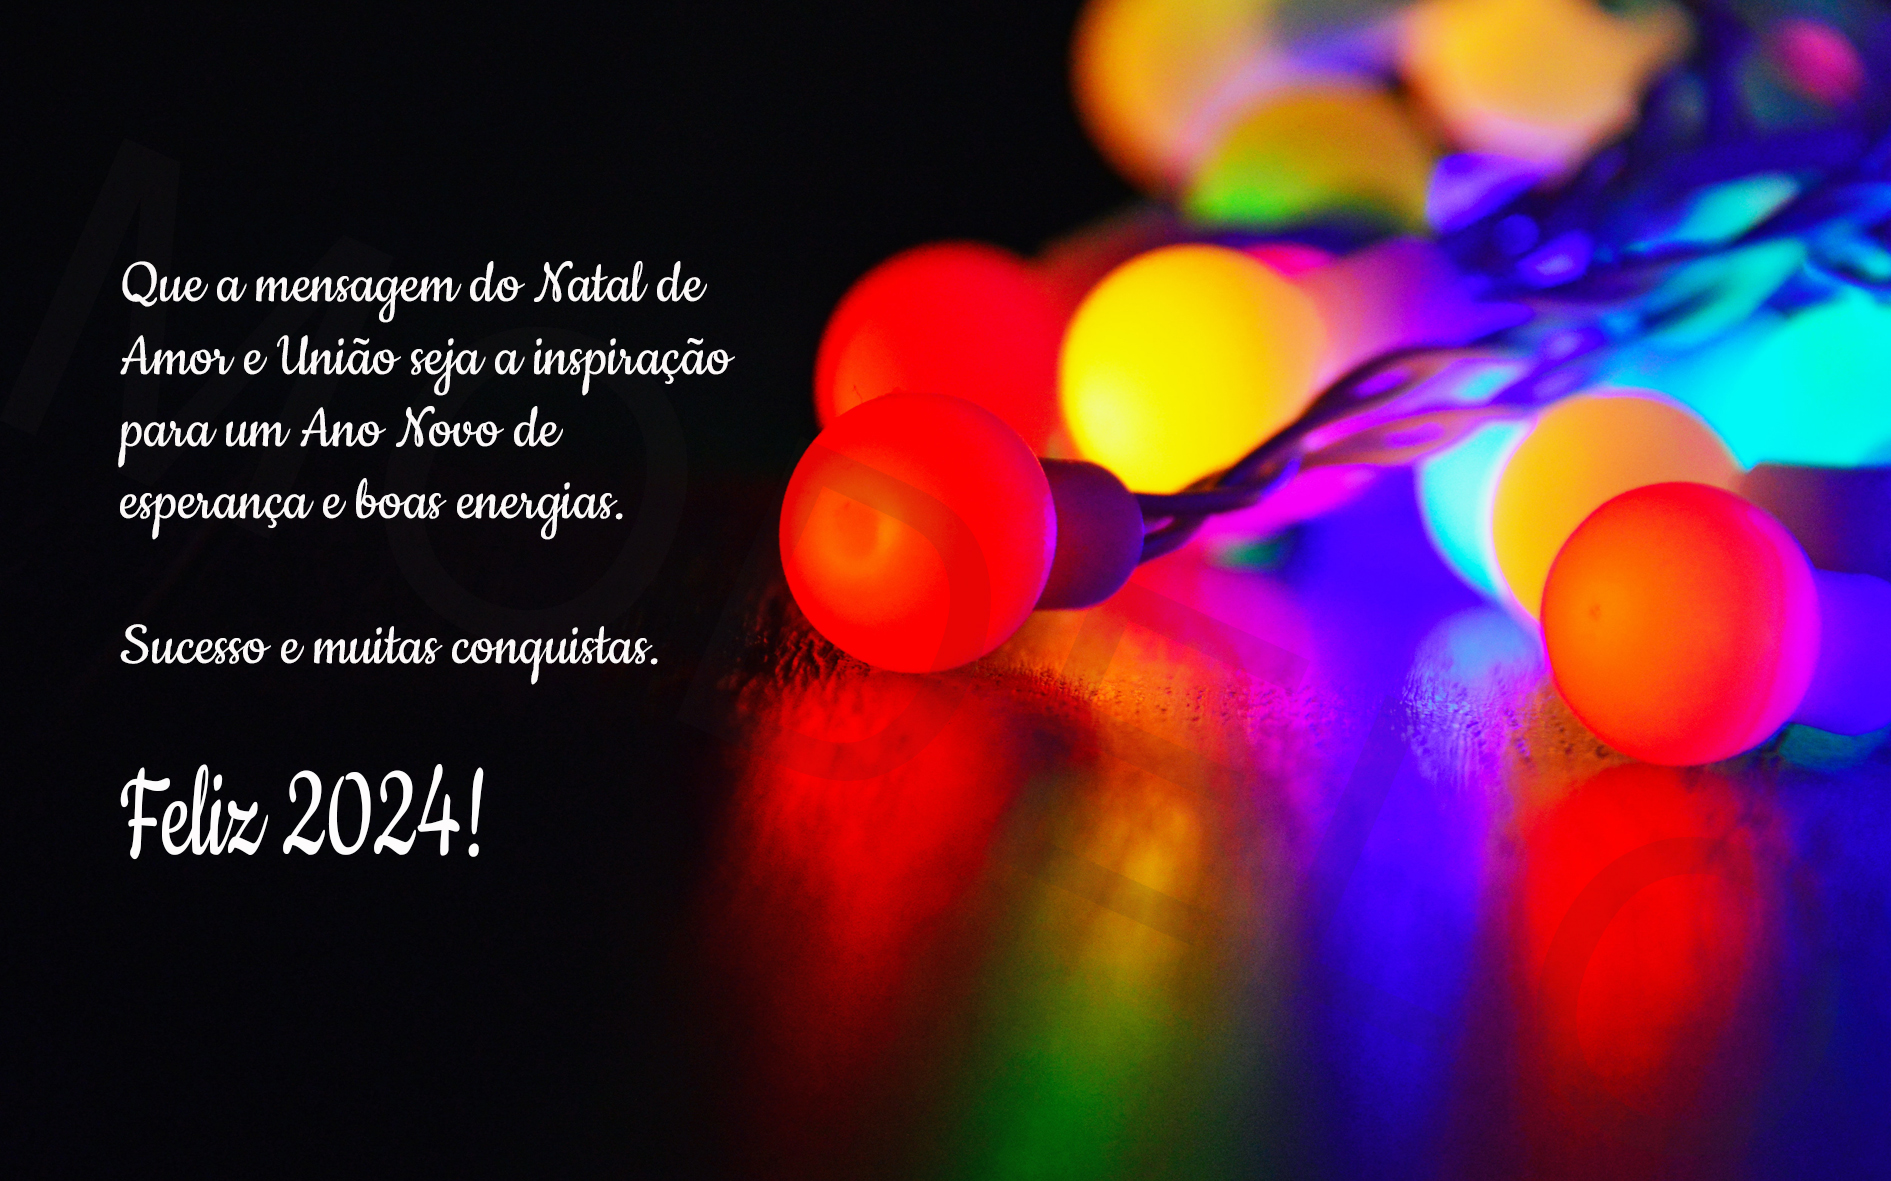 Gostaríamos de desejar que em 2022 tudo seja ainda mais iluminado e abençoado.Feliz Natal e Feliz Ano Novo!